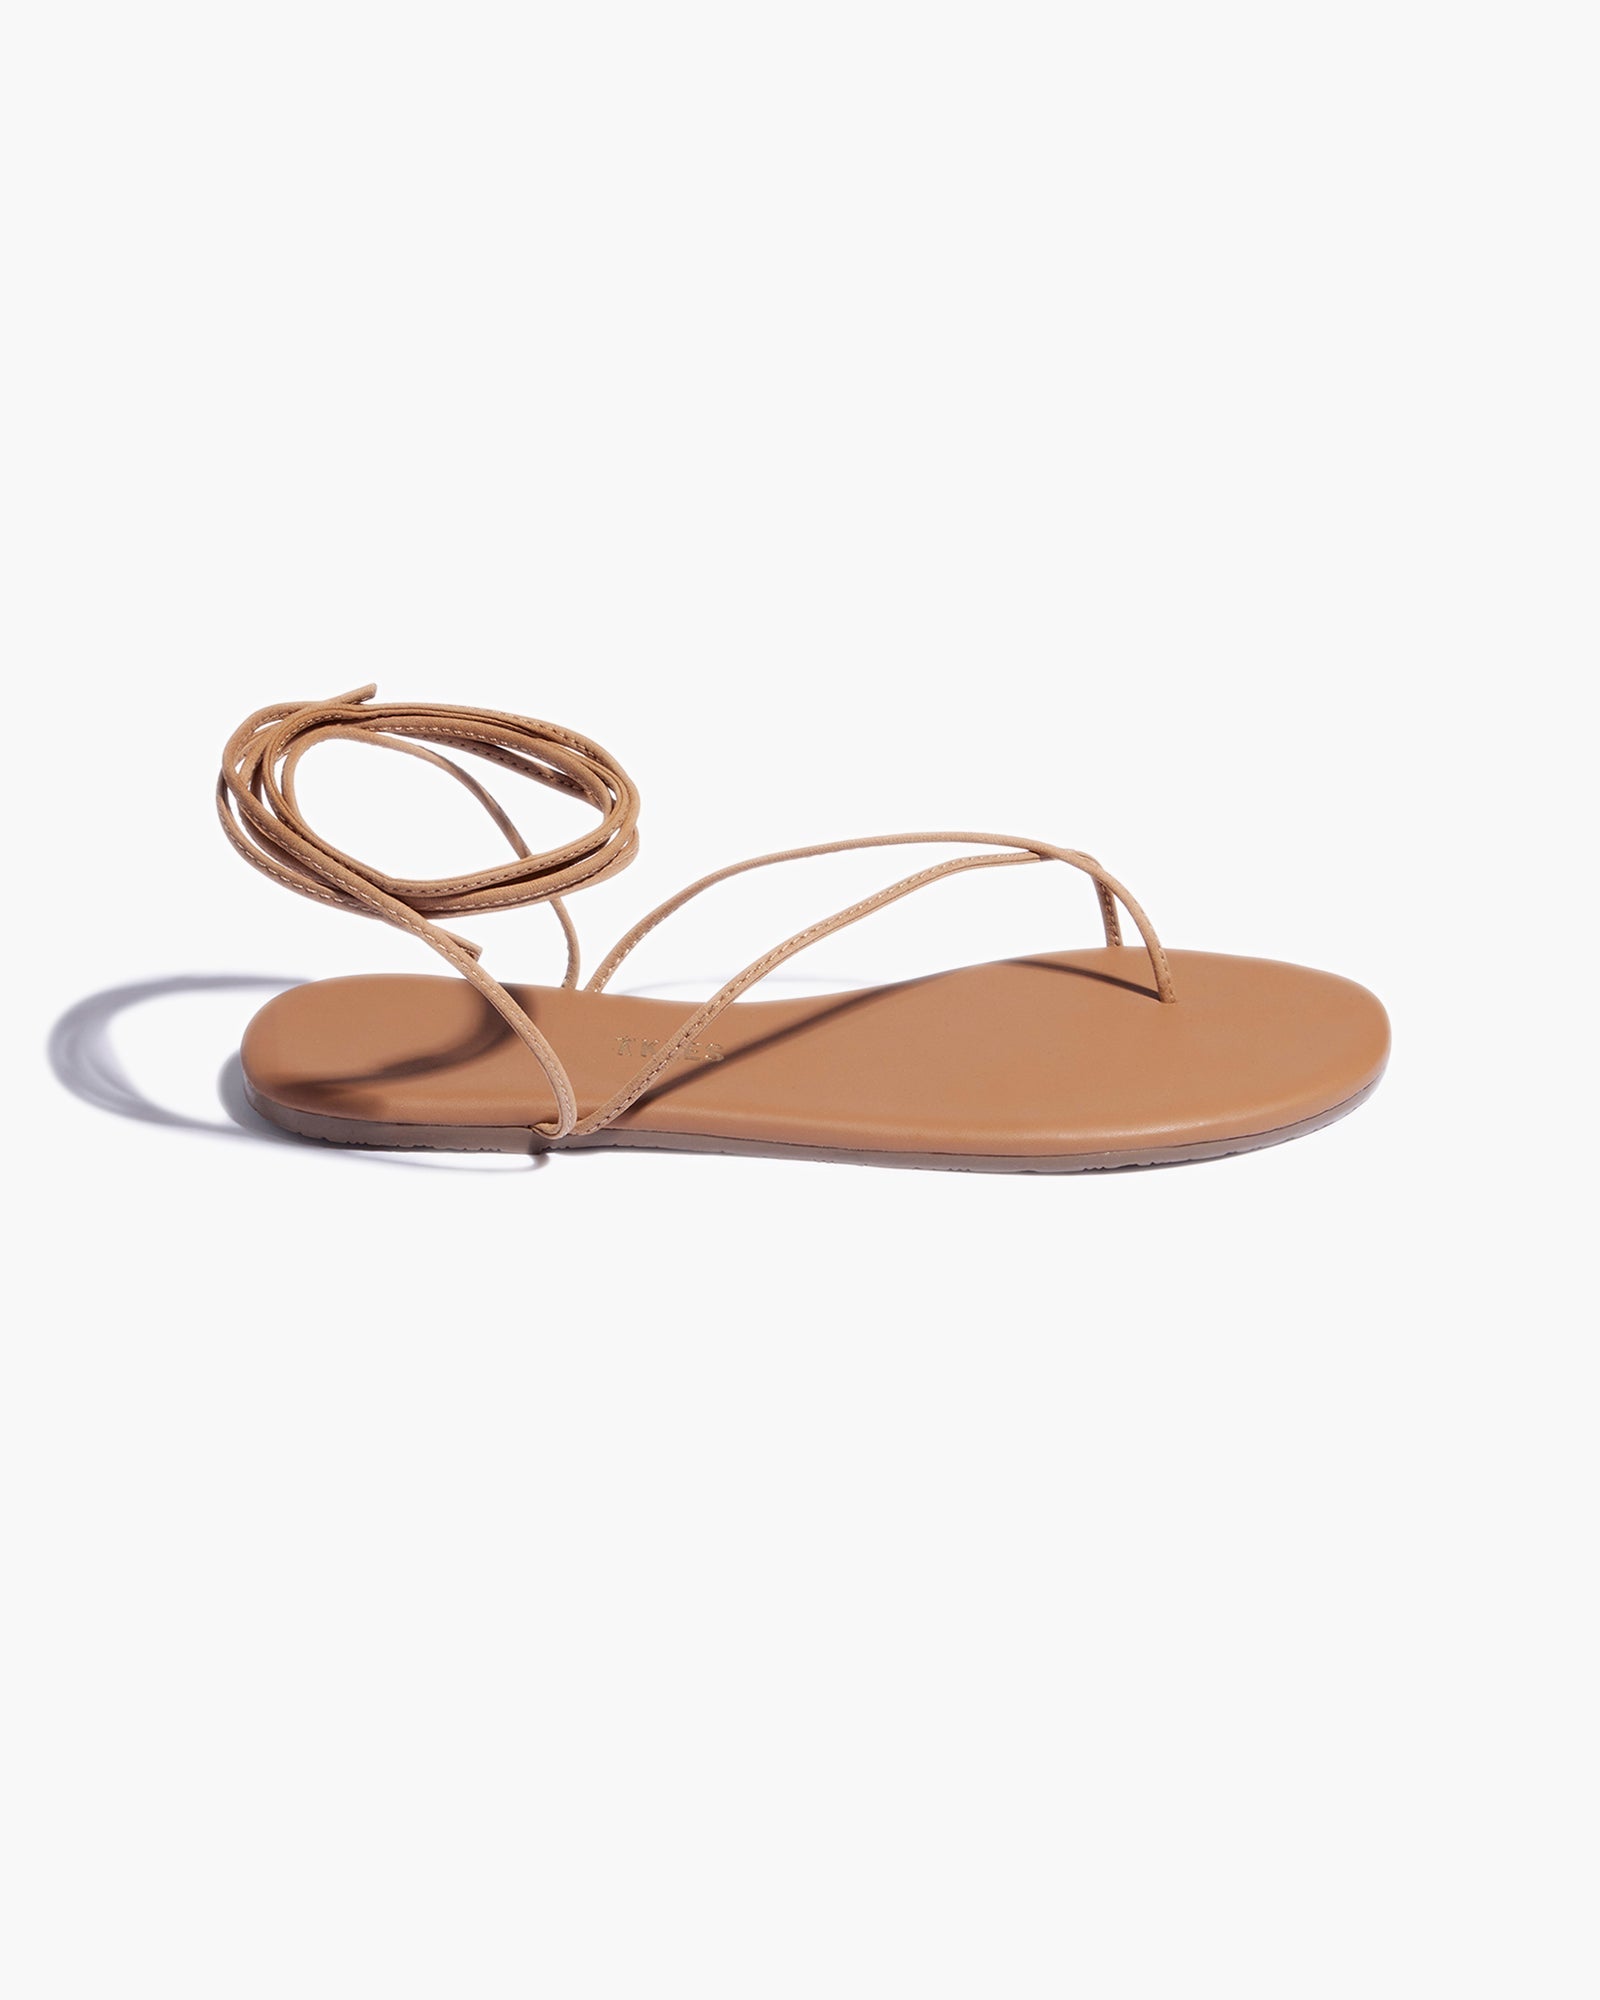 Roe in Hazelton | Sandals | Women's Footwear – TKEES